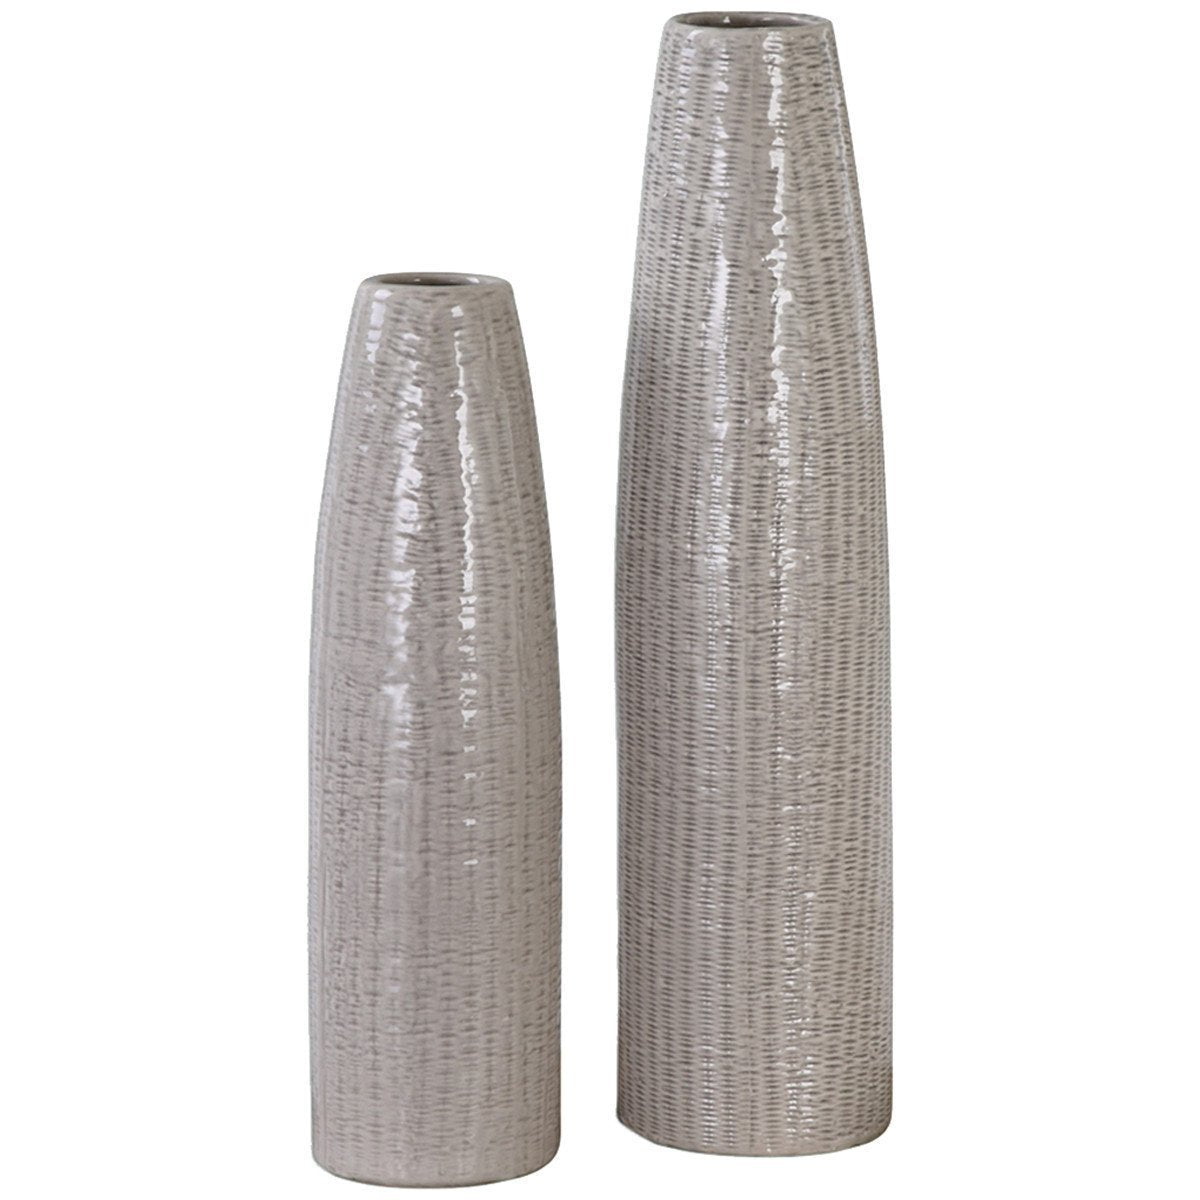 Uttermost Sara Textured Ceramic Vases, 2-Piece Set